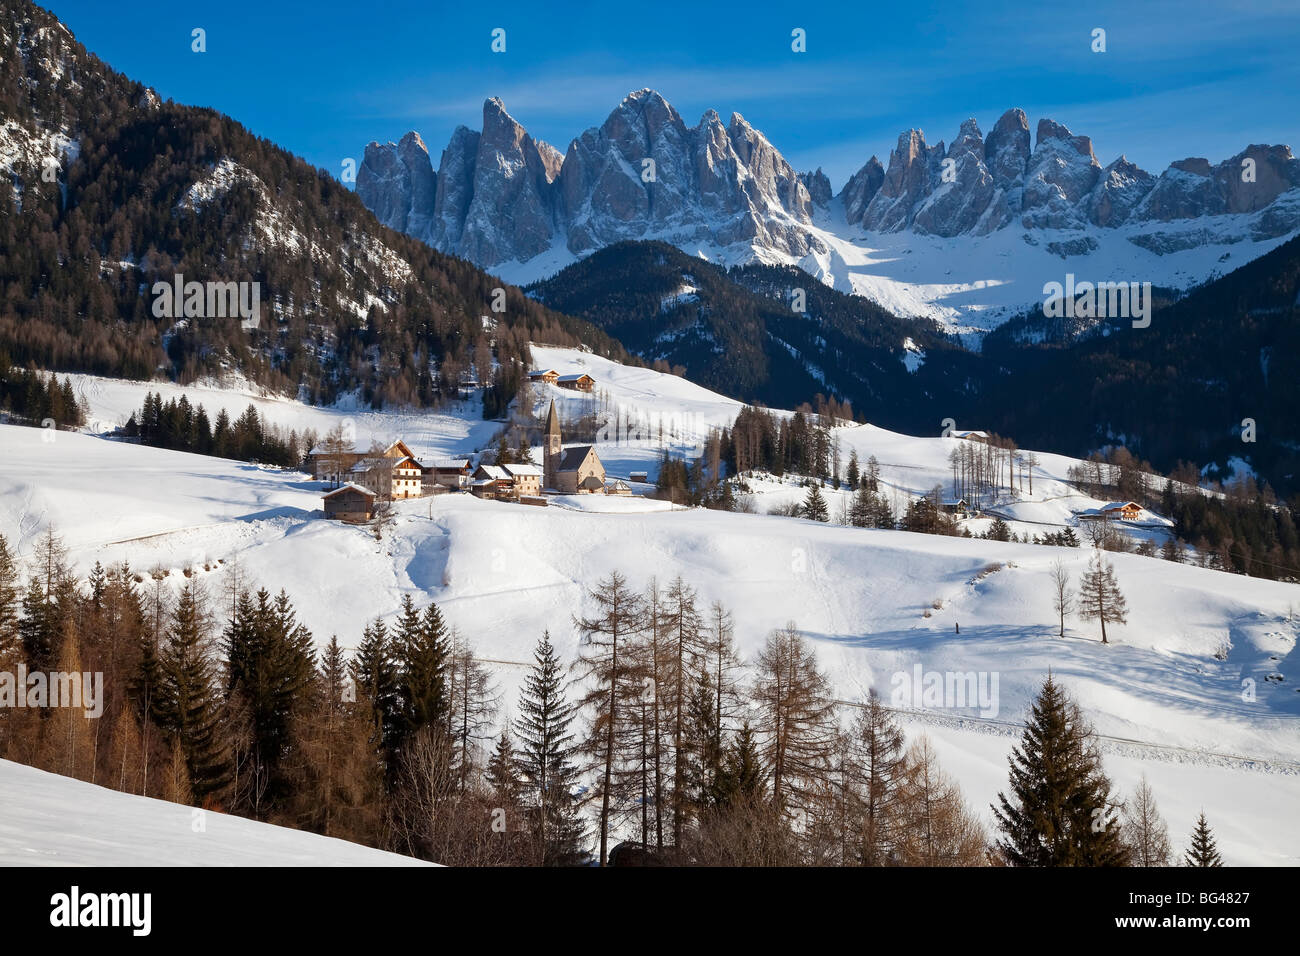 St. Magdalena village, Geisler Spitzen (3060m), Val di Funes, Dolomites mountains, Trentino-Alto Adige, South Tirol, Italy Stock Photo